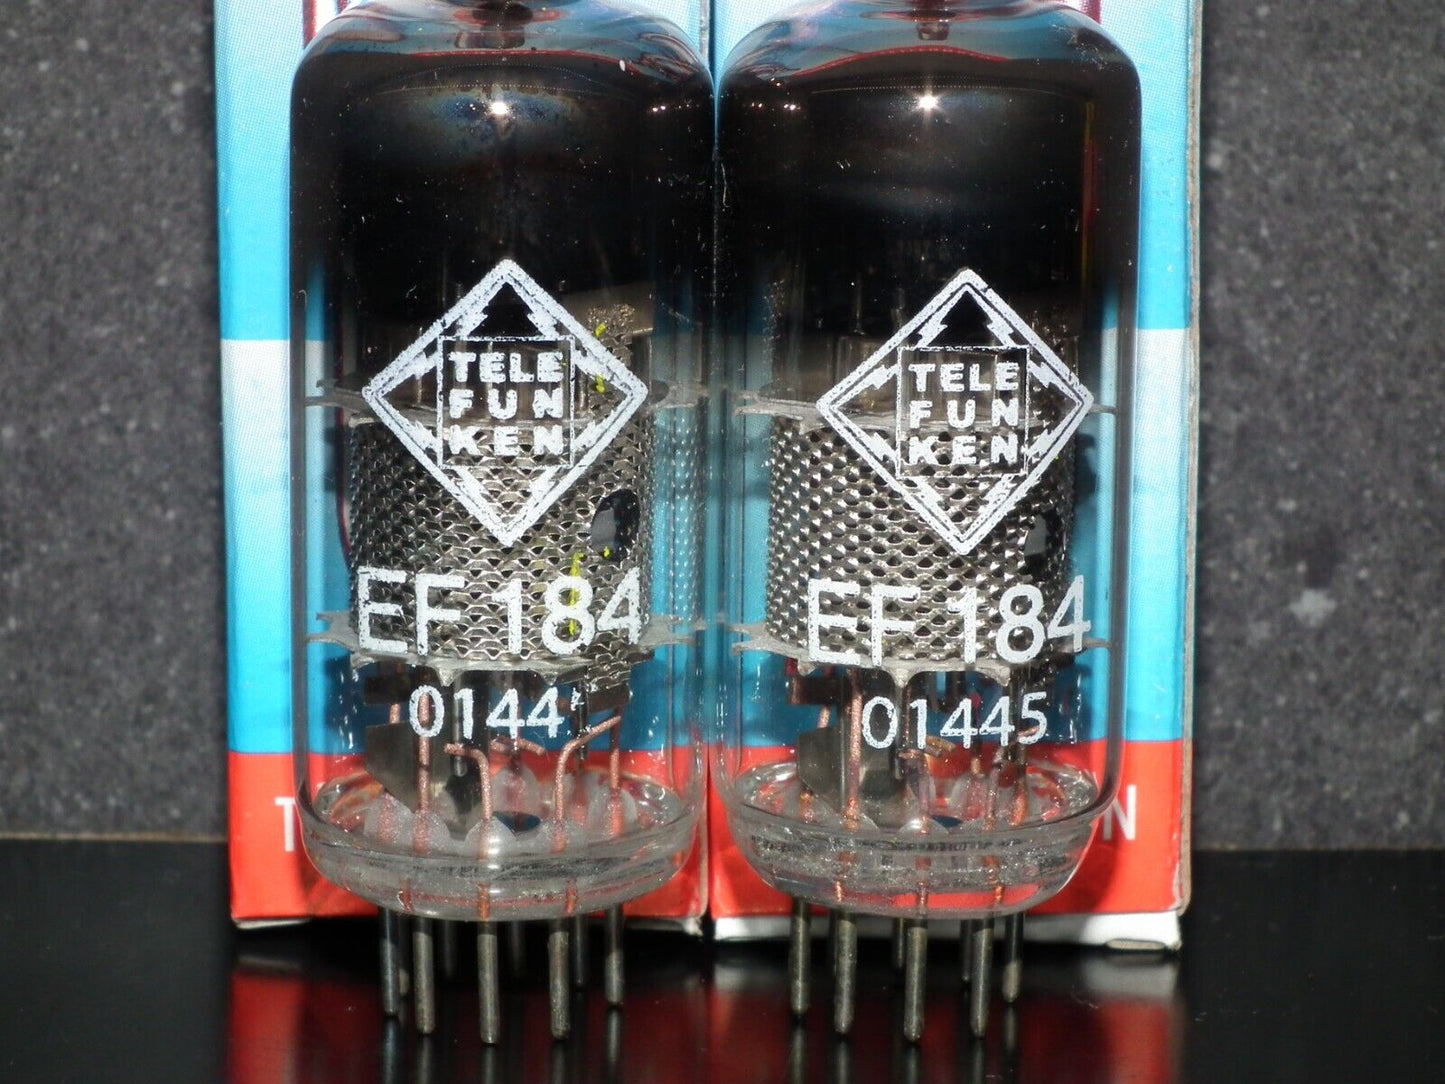 Platinum Matched Pair (2 tubes) EF184 Telefunken 6EJ7 West Germany